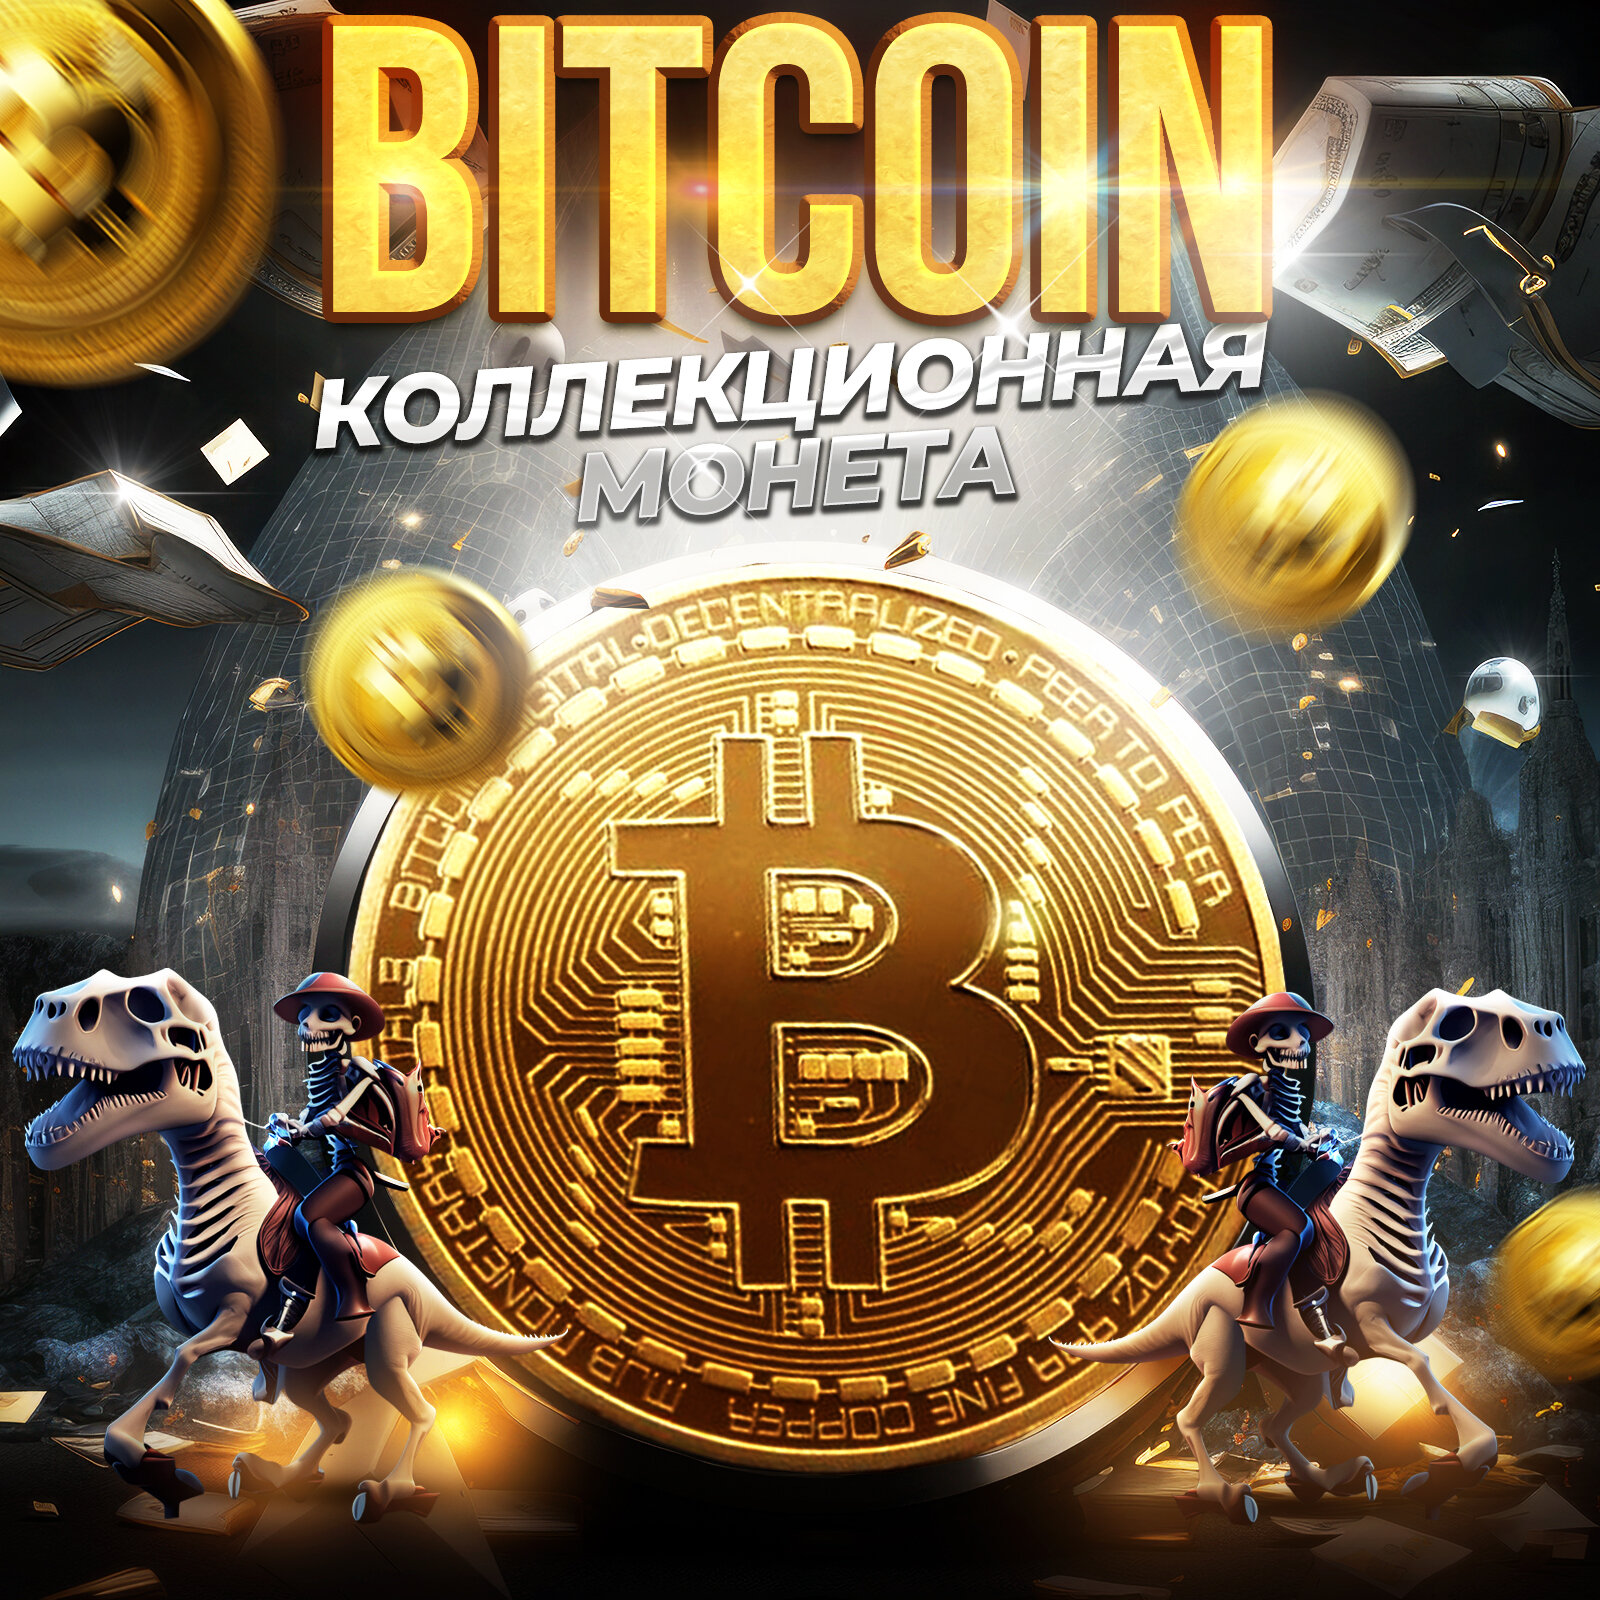 Коллекционная монета криптовалюта Bitcoin 40 мм